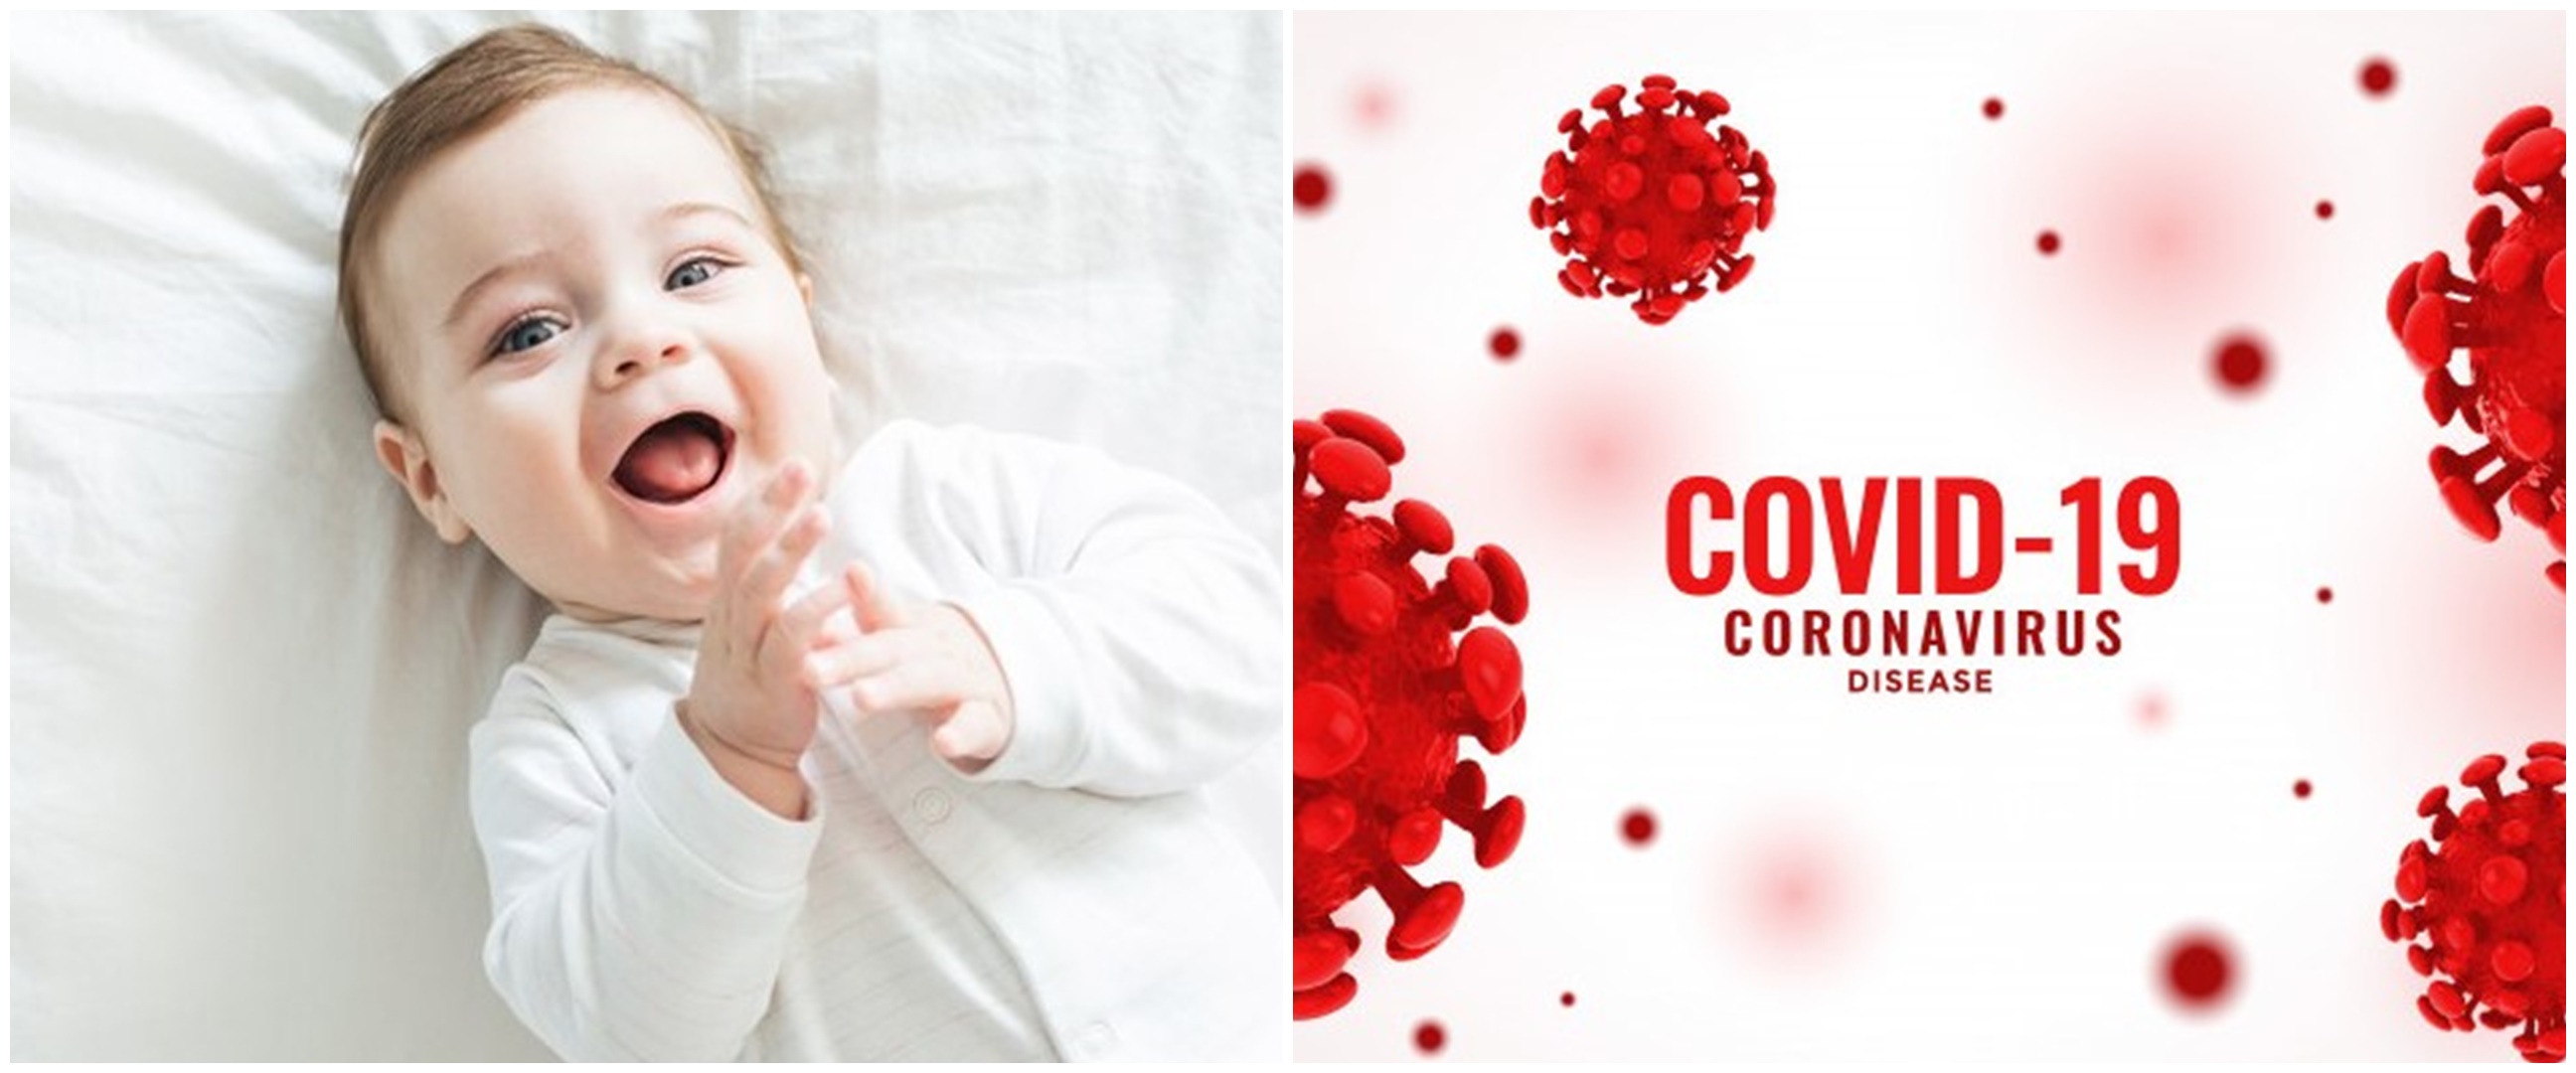 Cara mengenali gejala Covid-19 pada bayi dan anak-anak, waspada ya